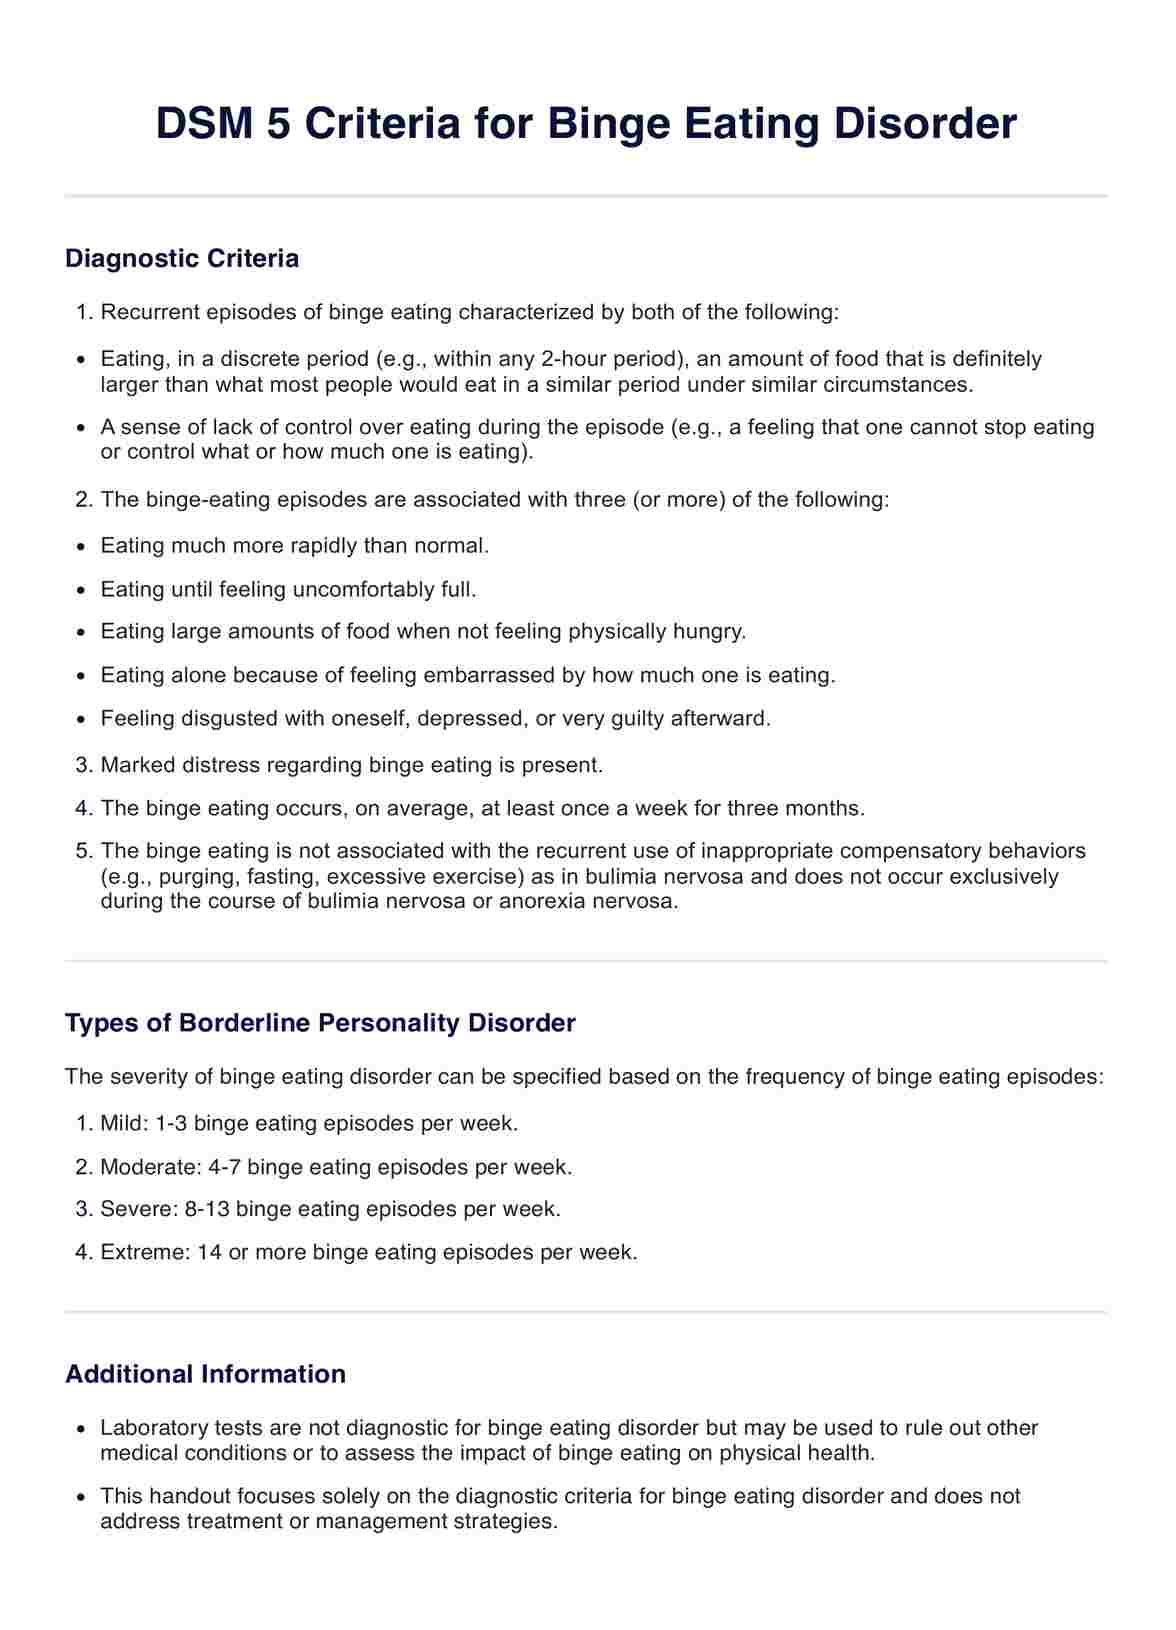 DSM 5 Criteria for Binge Eating Disorder PDF Example